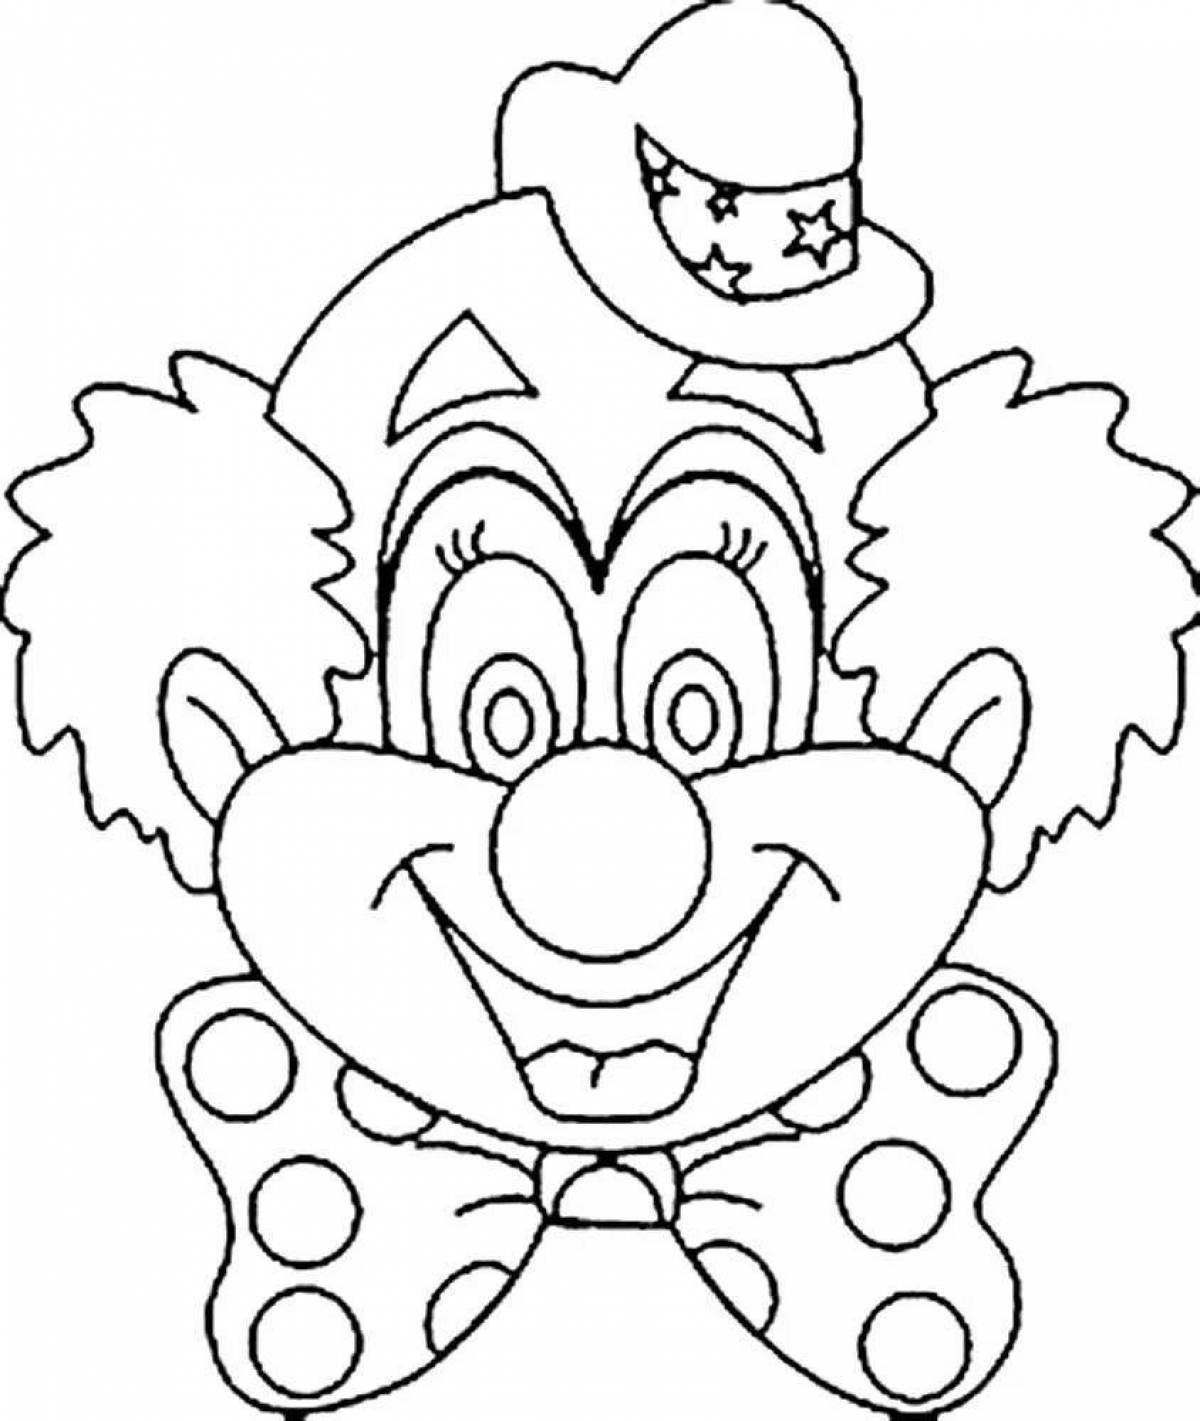 Веселая страница раскраски лица клоуна для детей